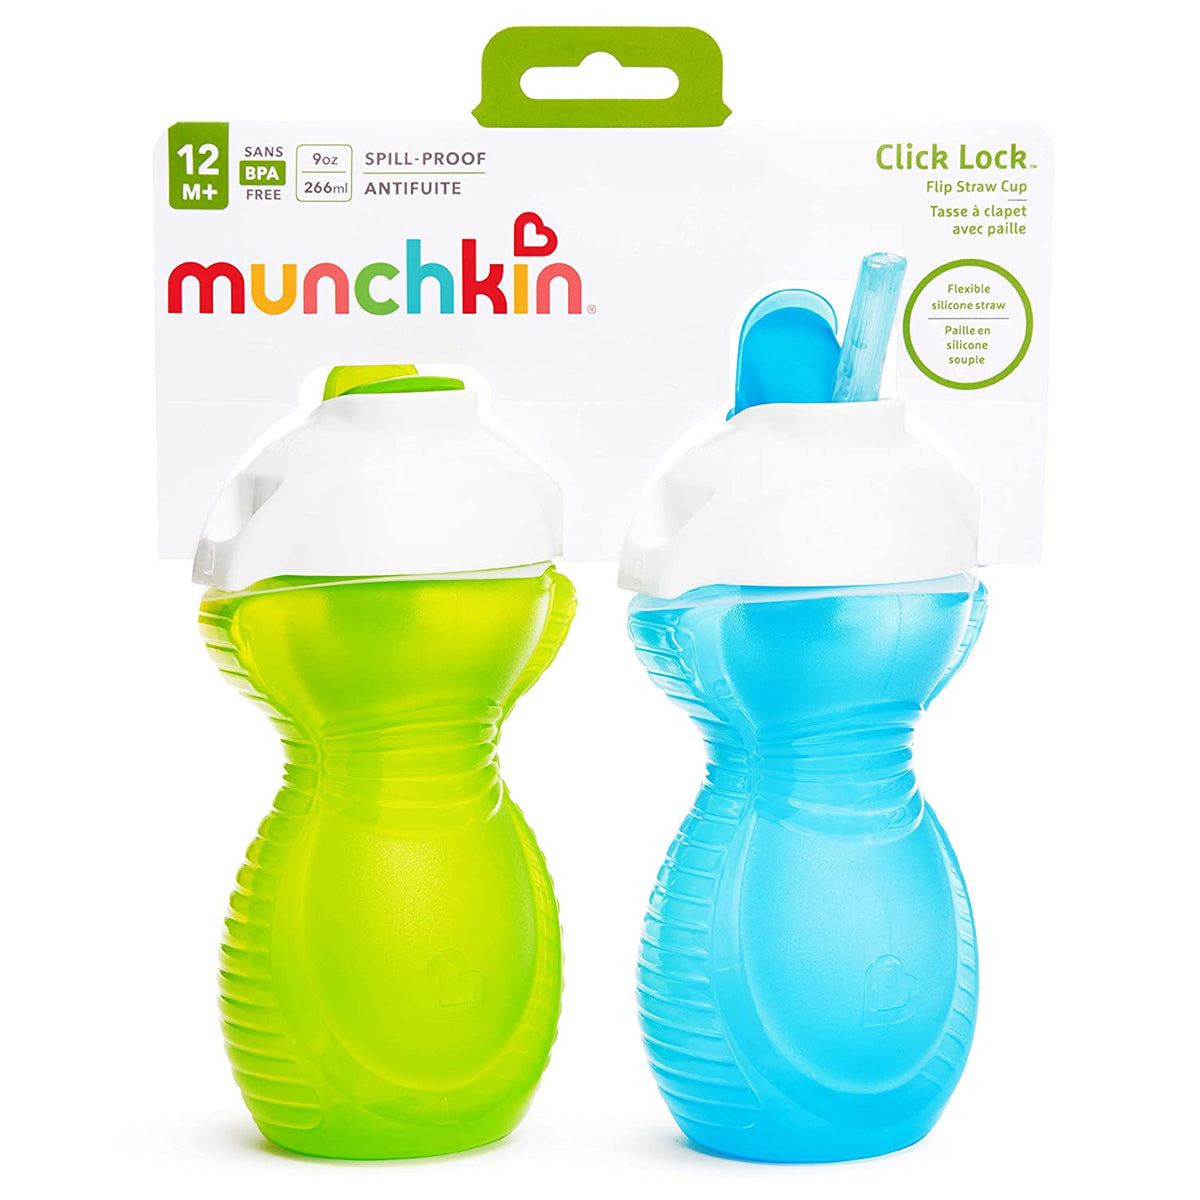 Munchkin Straw Cup, Flip, Click Lock, 12+ Months